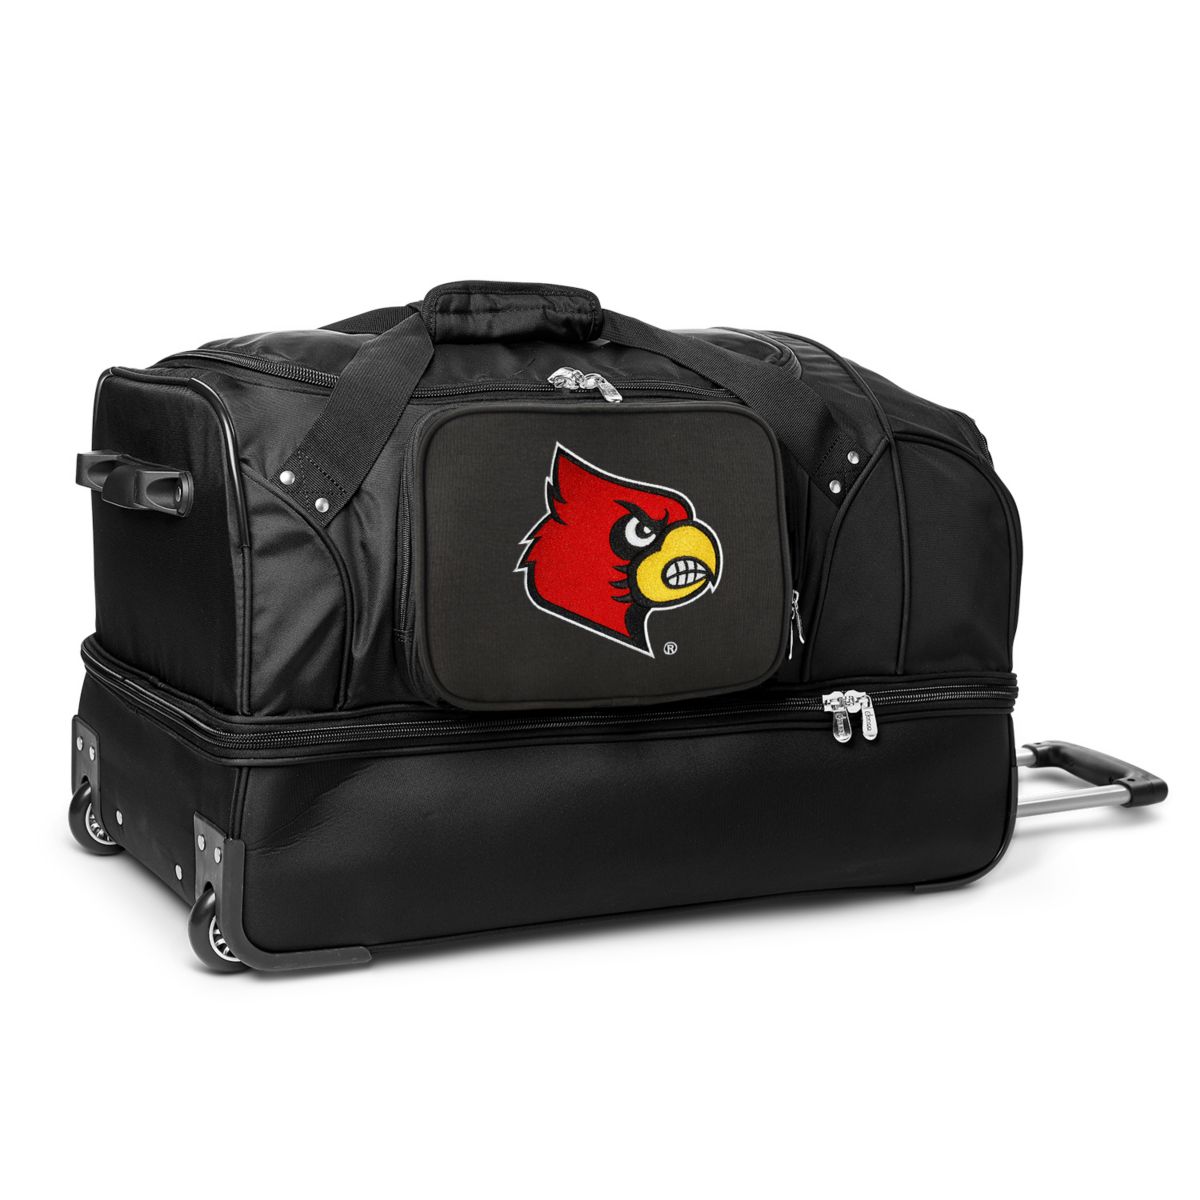 27-дюймовая спортивная сумка Louisville Cardinals на колесиках Denco